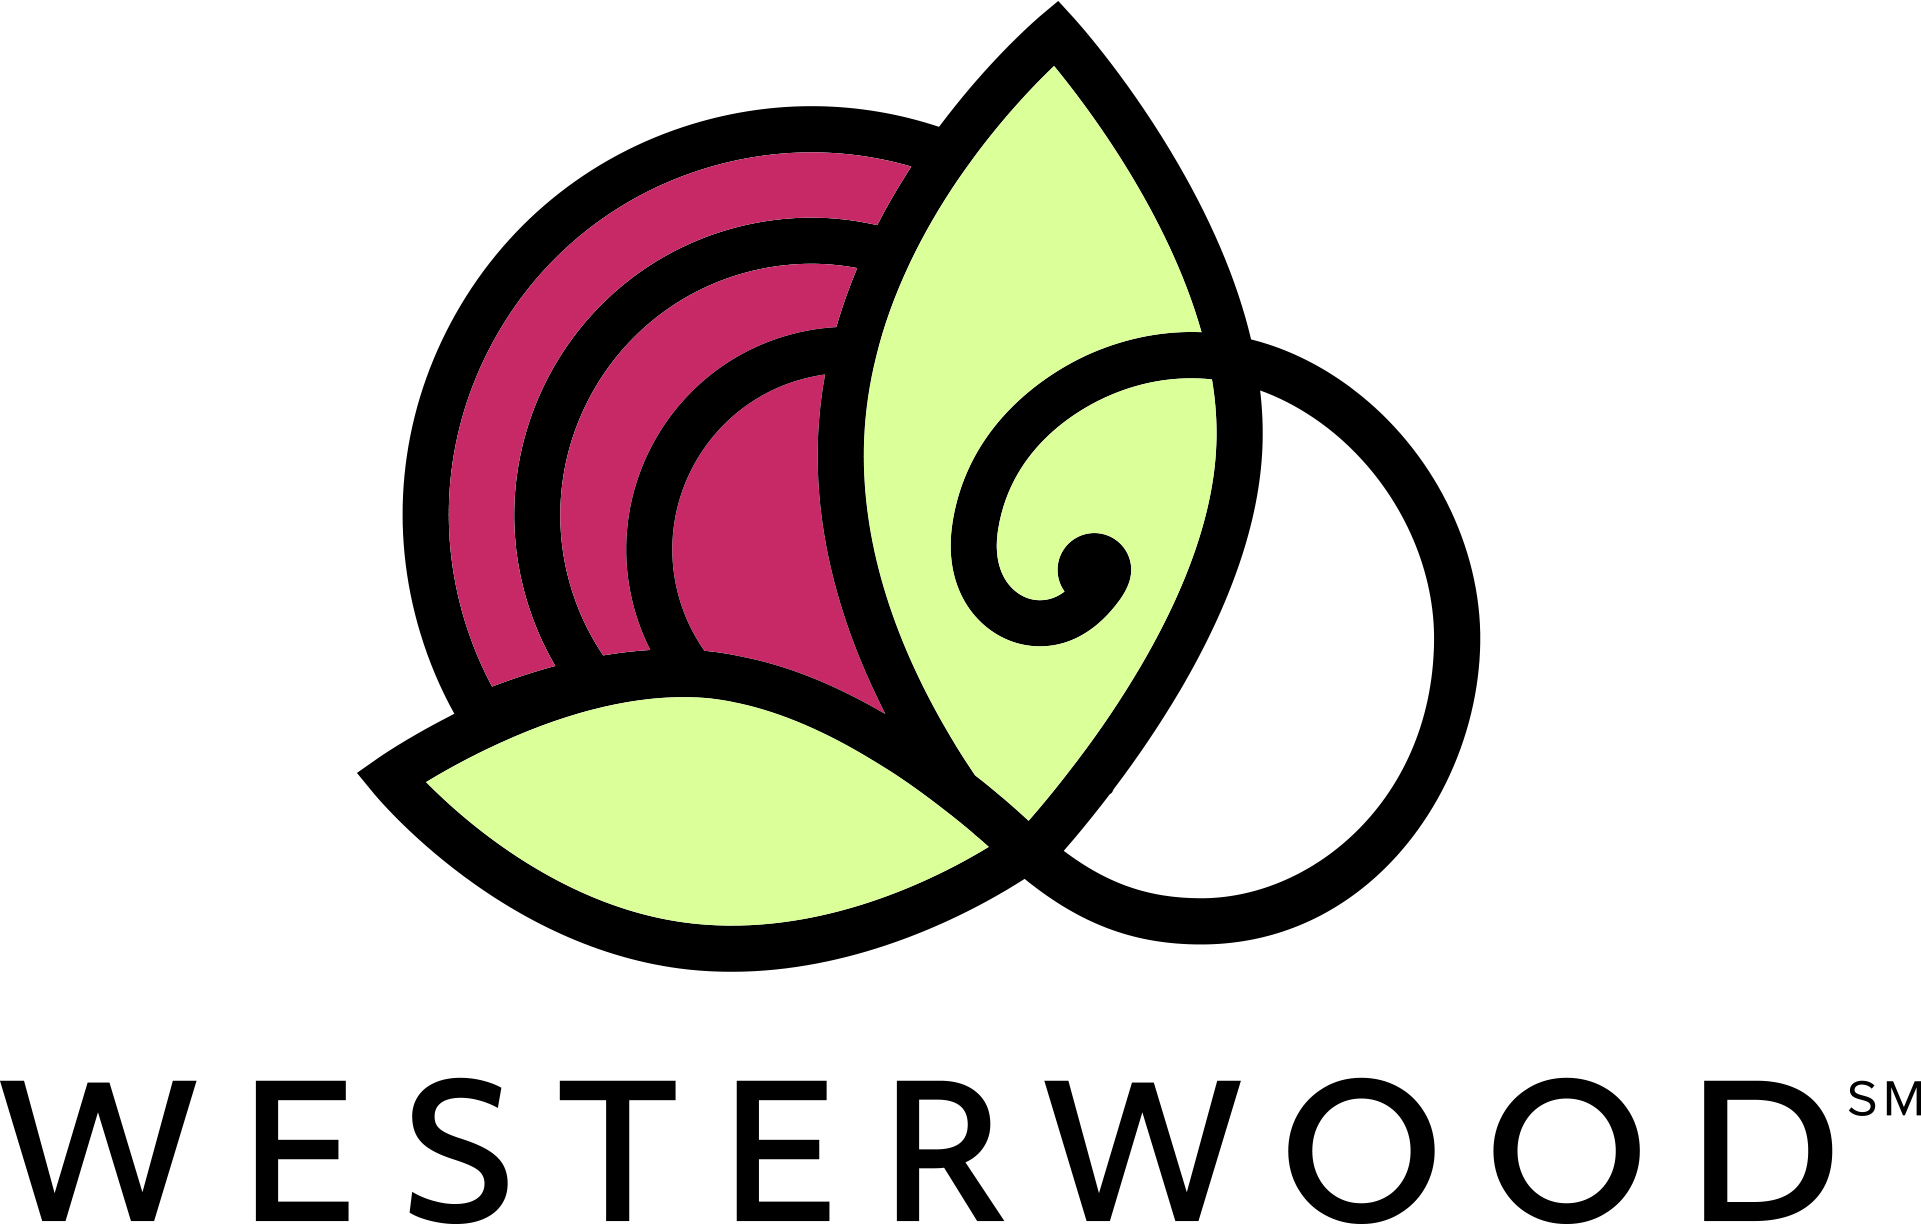 Westerwood (Socio púrpura)